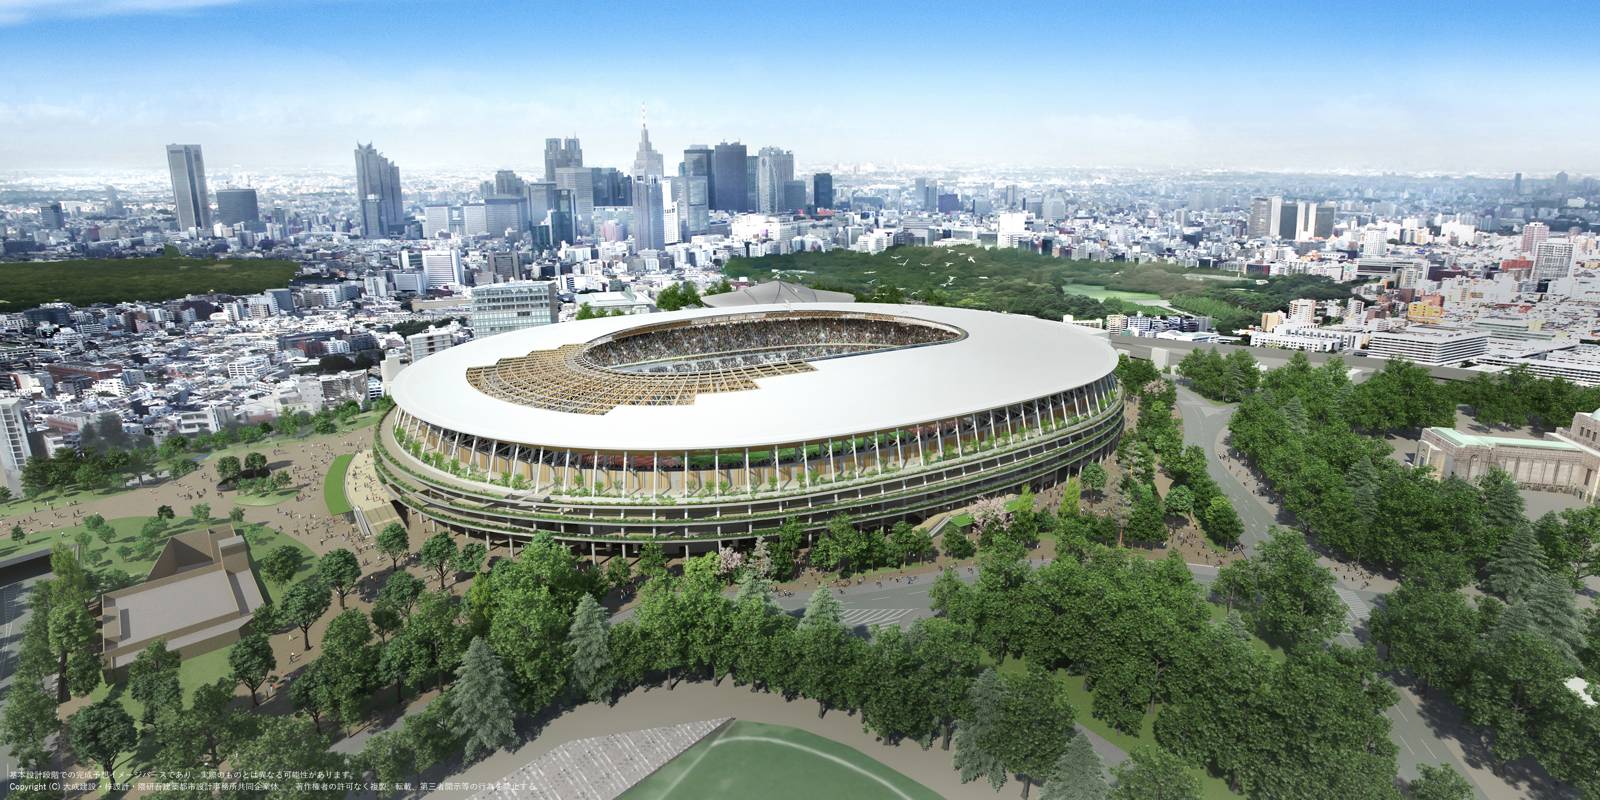 Stadium japan national Kengo Kuma: